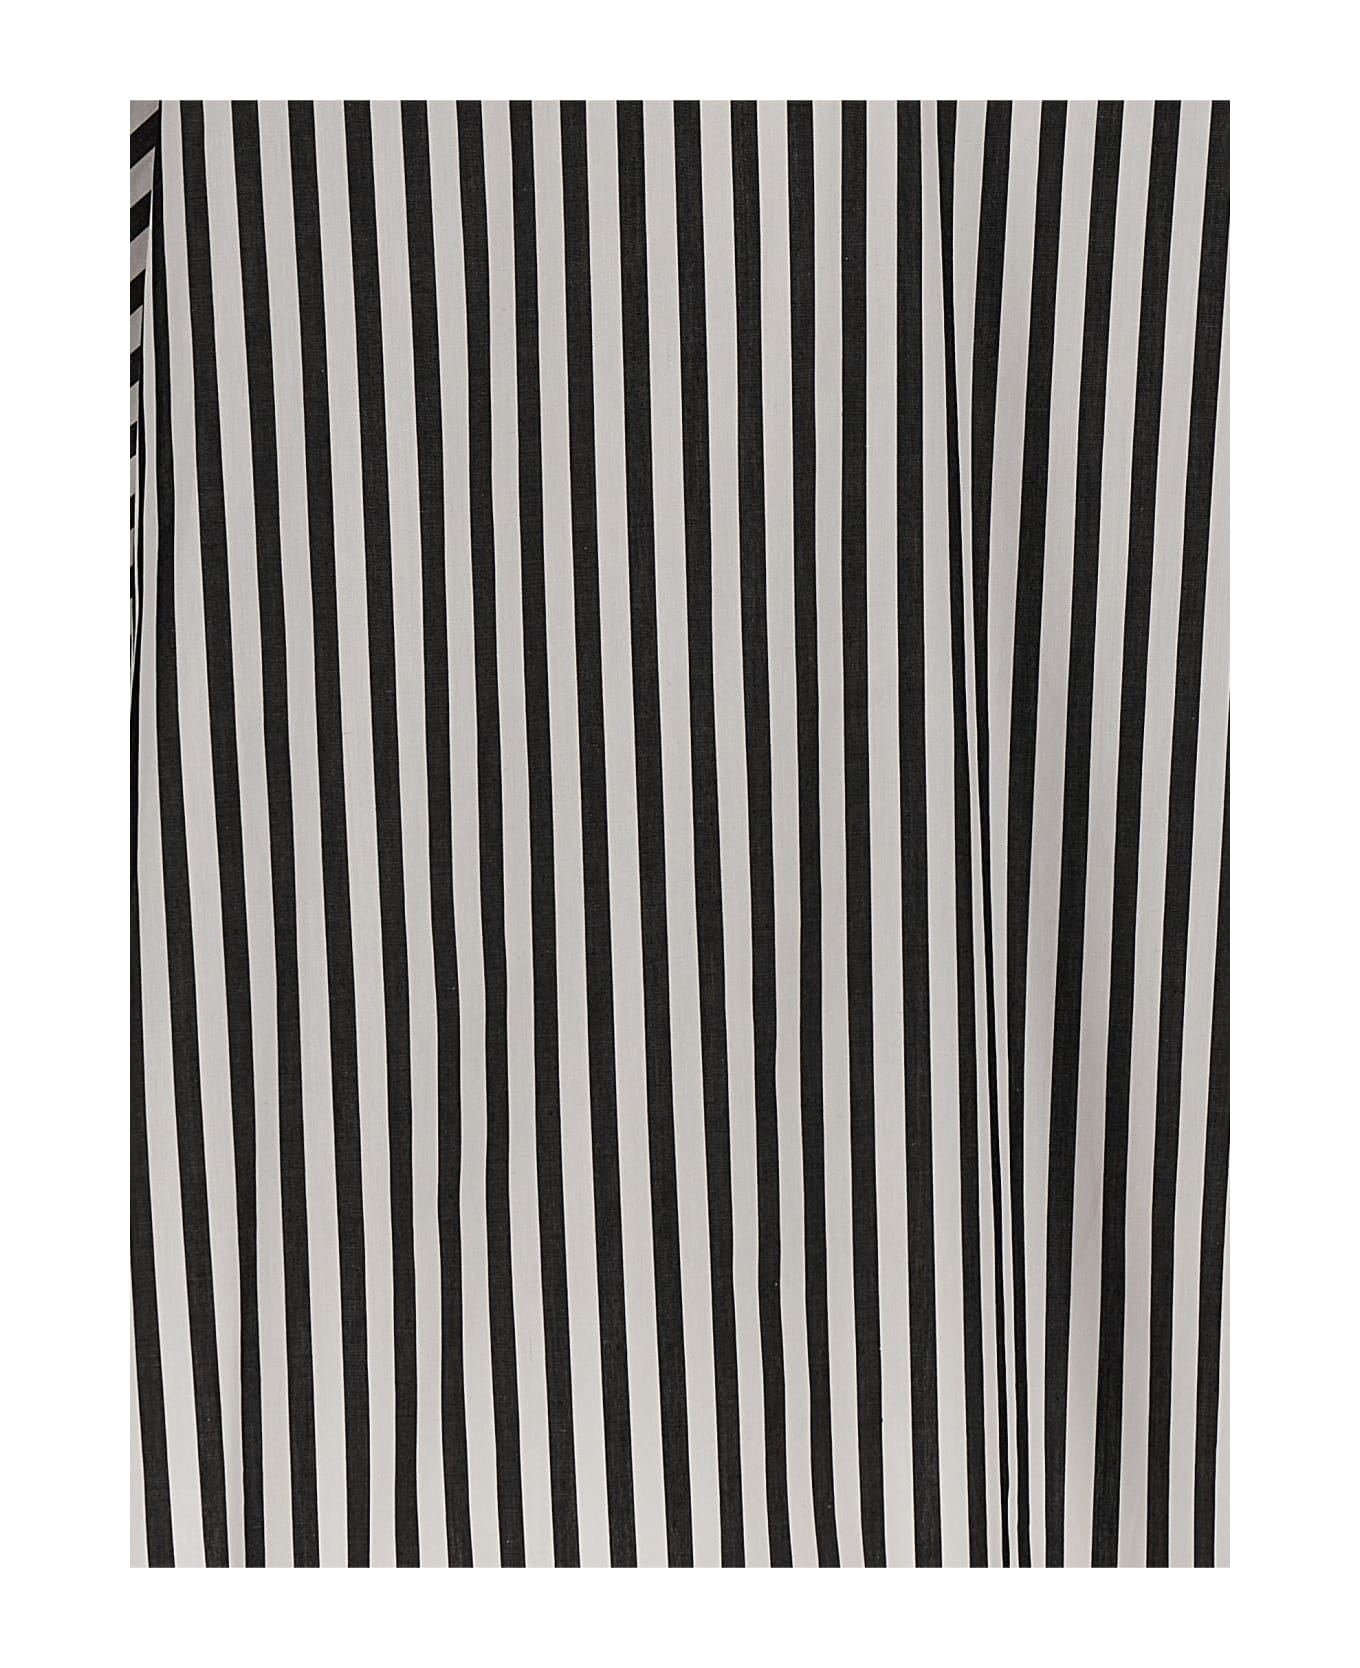 Carolina Herrera Striped Bloshirt - White/Black ブラウス